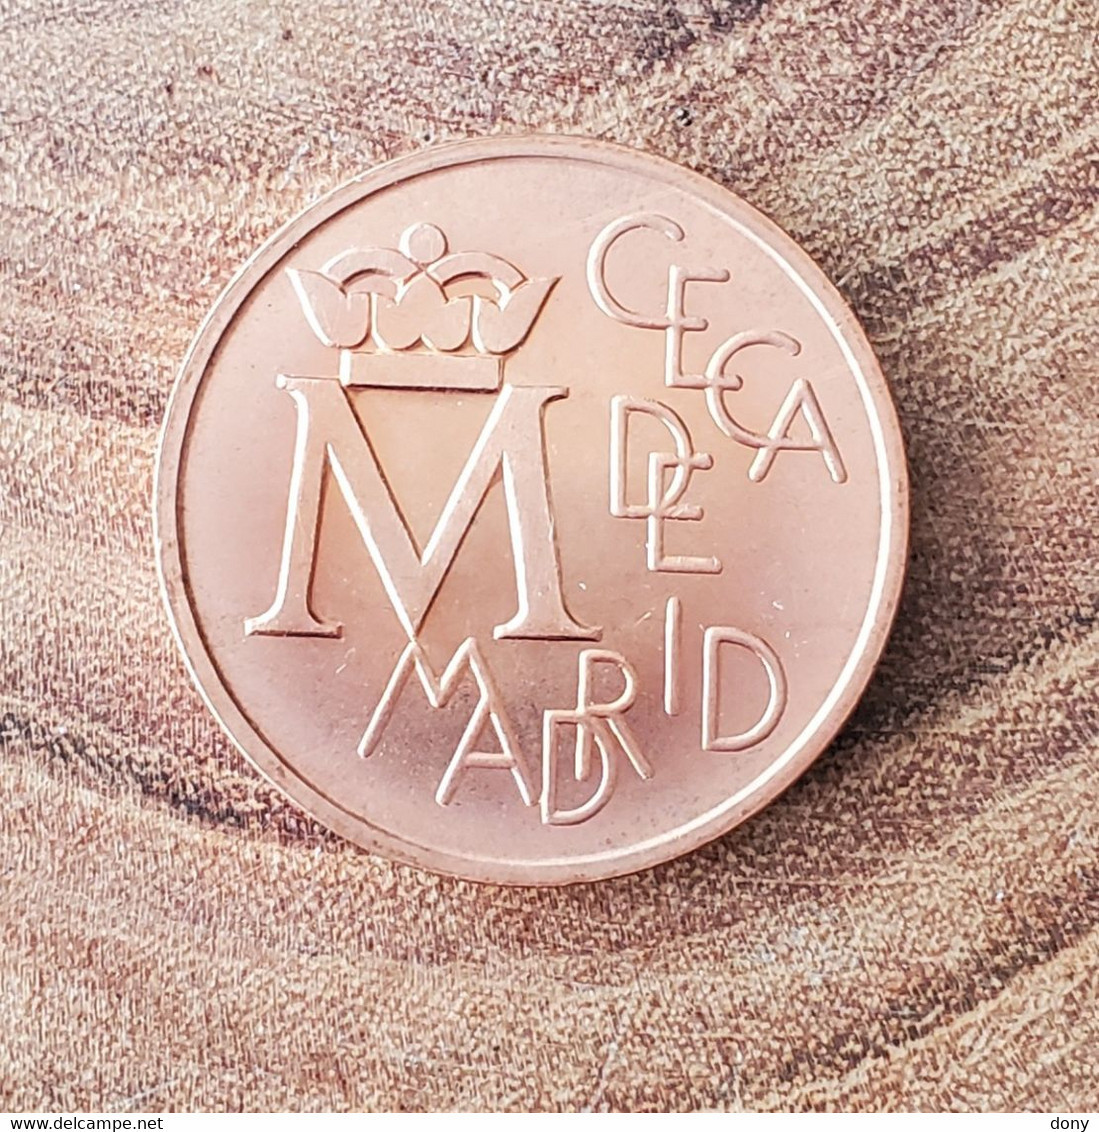 Medalla Prueba Cobre Conmemorativa De La Ceca De Madrid De 1987 Asi Nace Una Moneda XXV Aniversario Boda España -  Essays & New Minting